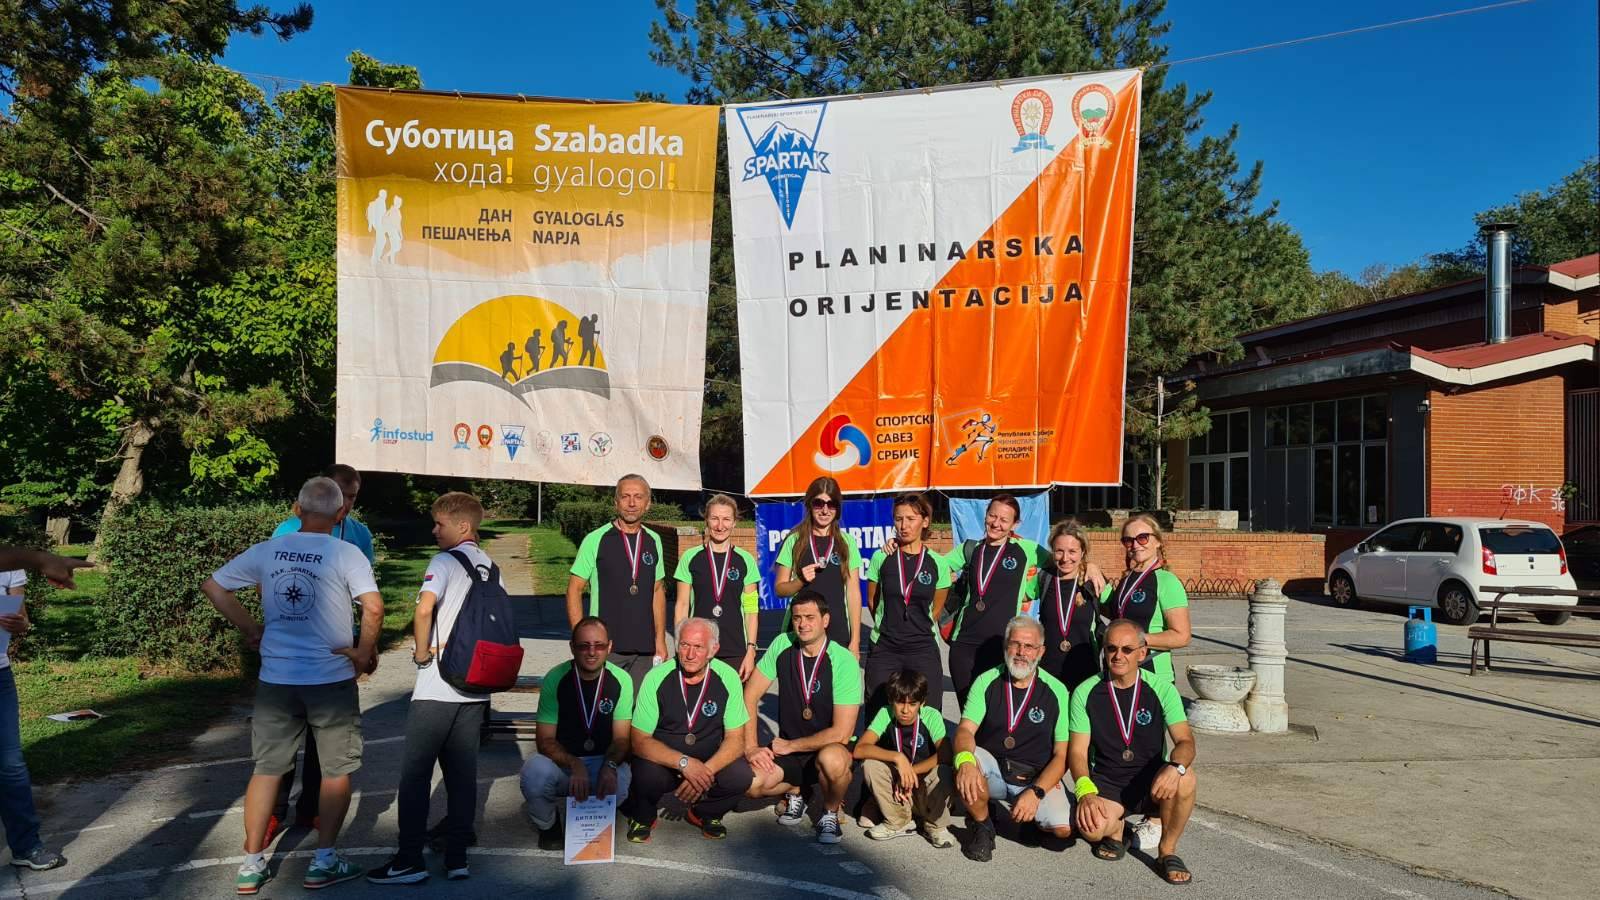 Danas počinje Balkansko prvenstvo u planinarskoj orijentaciji, u Sloveniji četvoro Paraćinaca